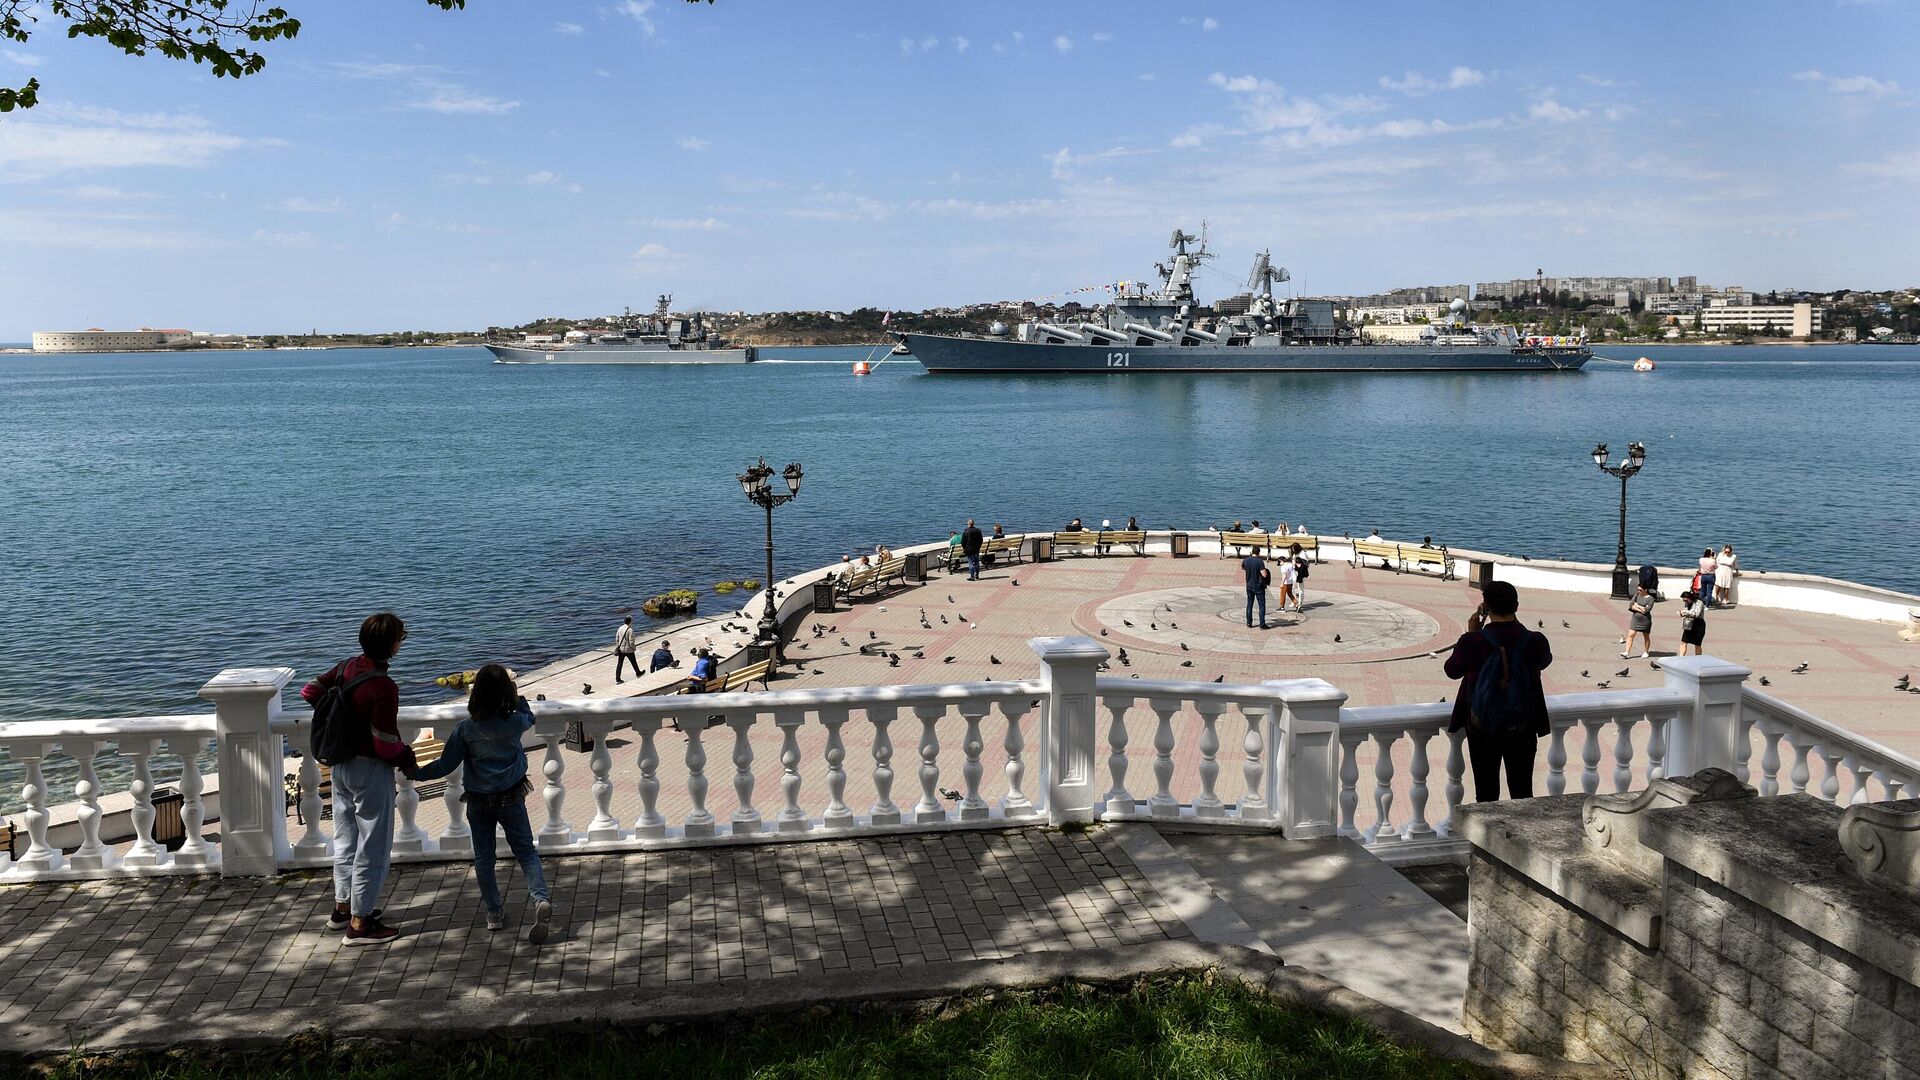 Аксенов может "замкнуть на себя" целевую федпрограмму, допустили в Крыму